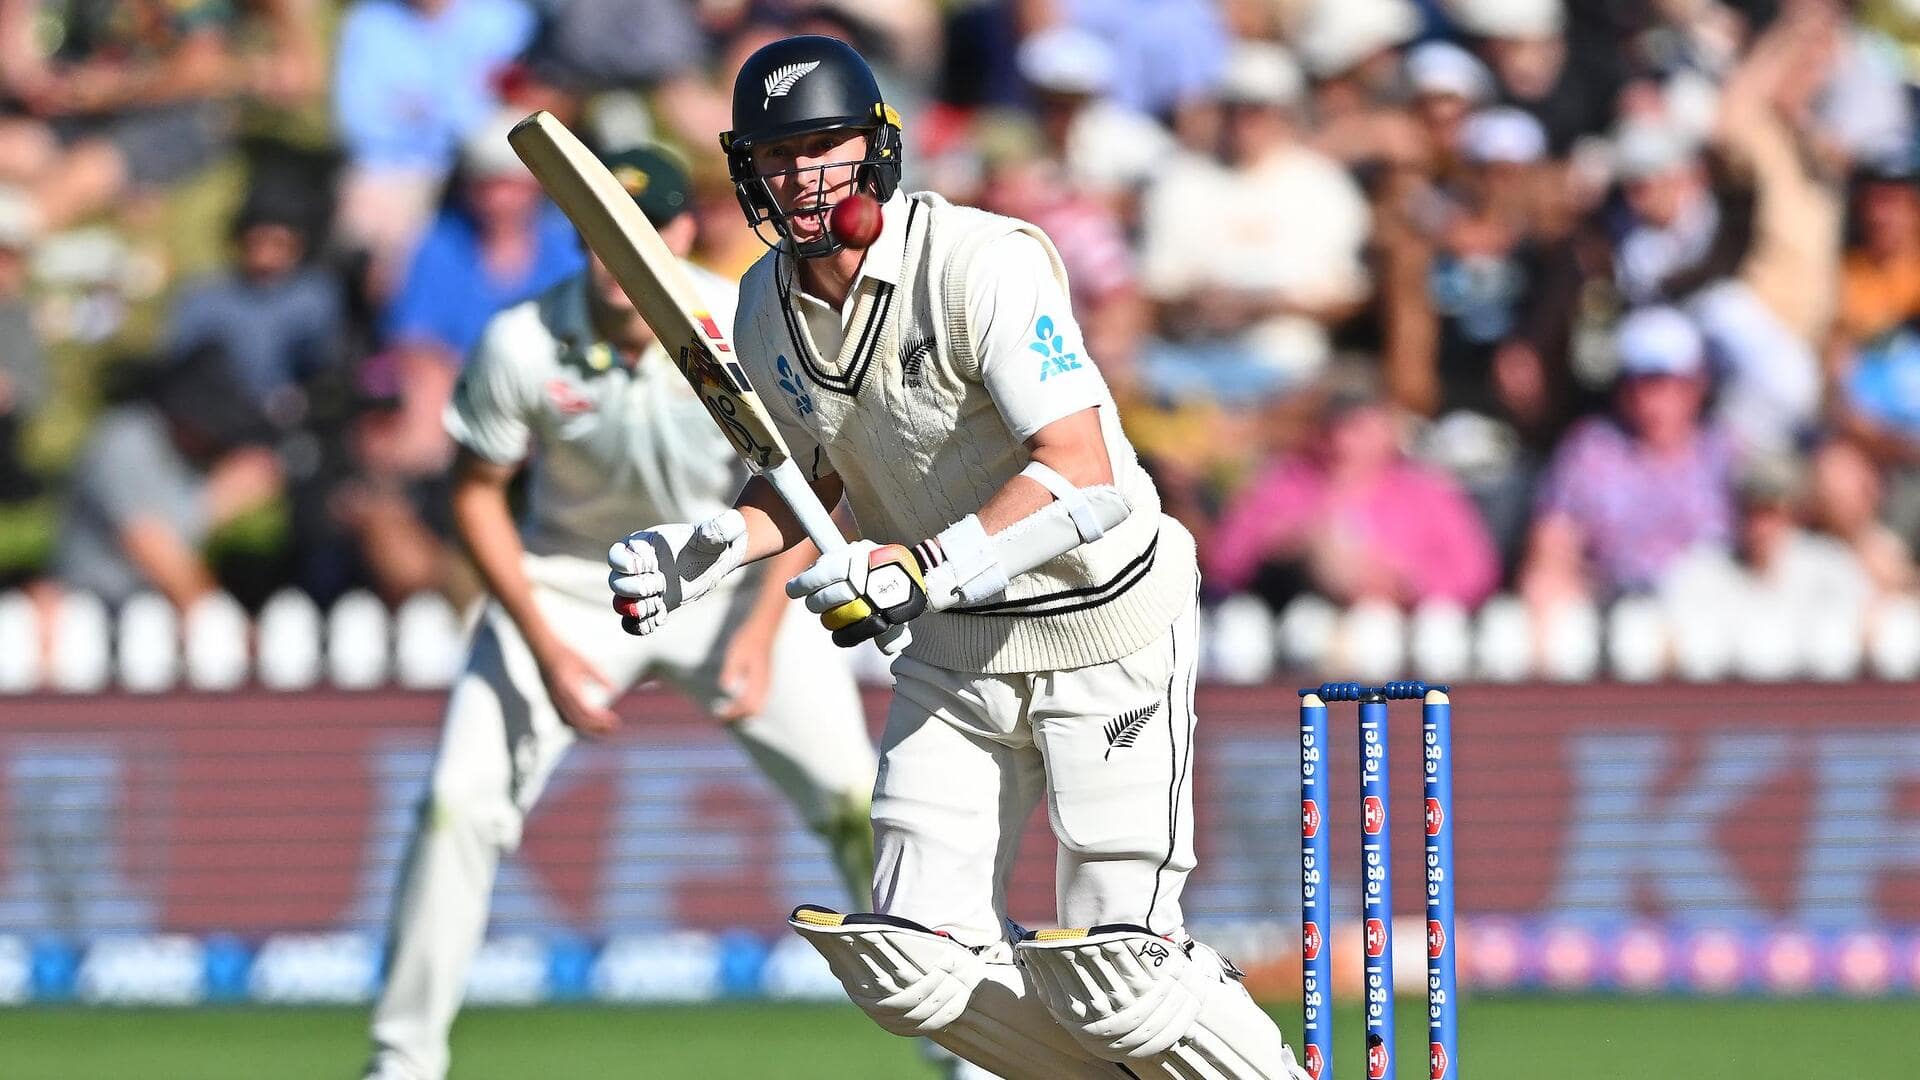 क्राइस्टचर्च टेस्ट: ऑस्ट्रेलिया के खिलाफ न्यूजीलैंड ने हासिल की बढ़त, ऐसा रहा दूसरे दिन का खेल